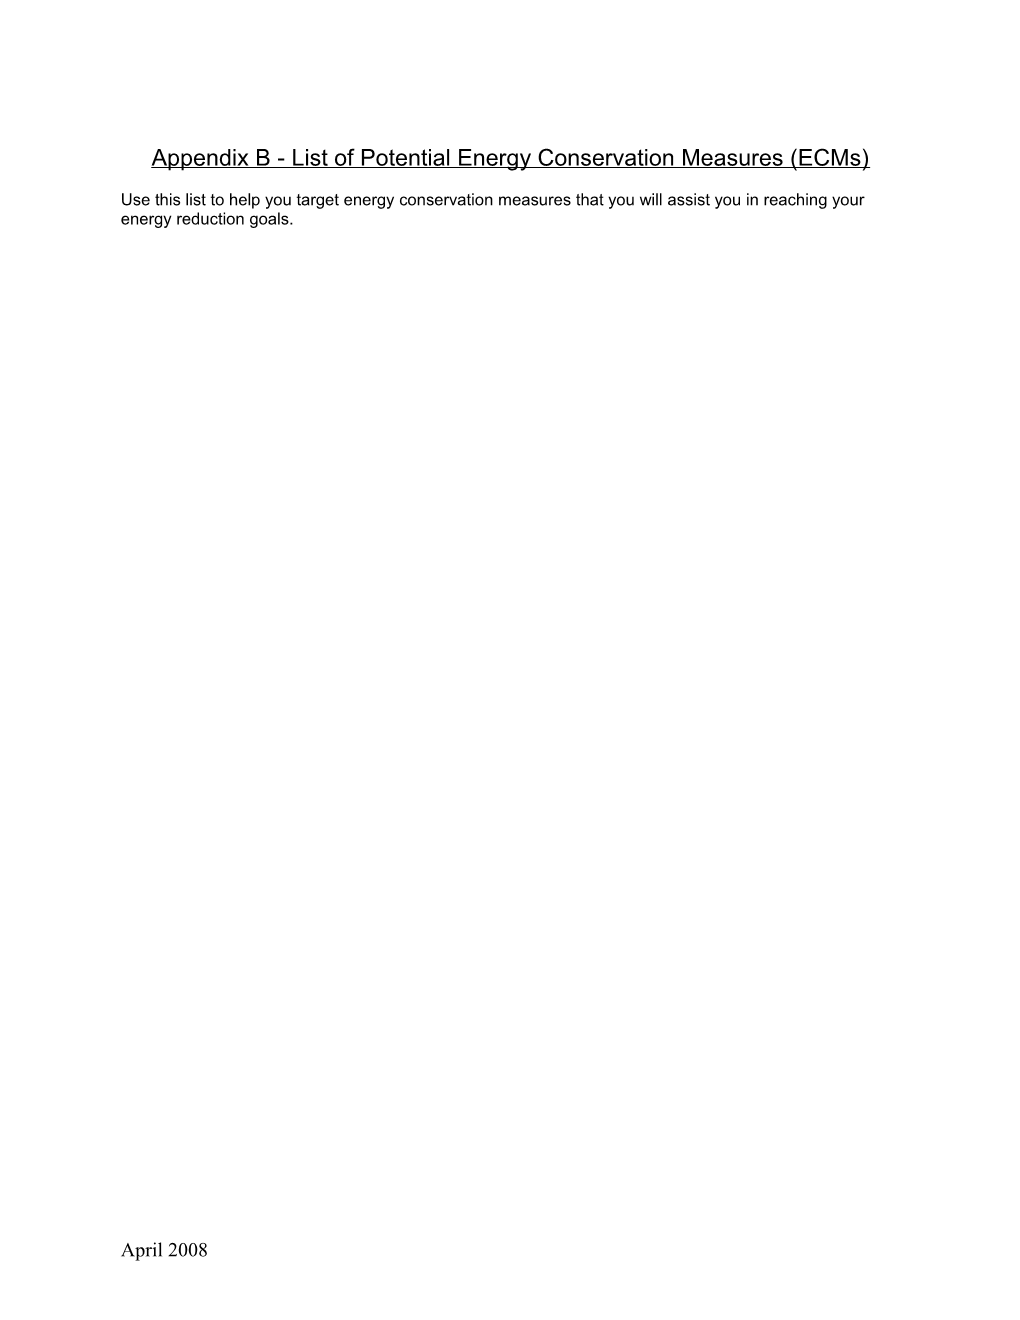 Appendix B - List of Potential Energy Conservation Measures (Ecms)